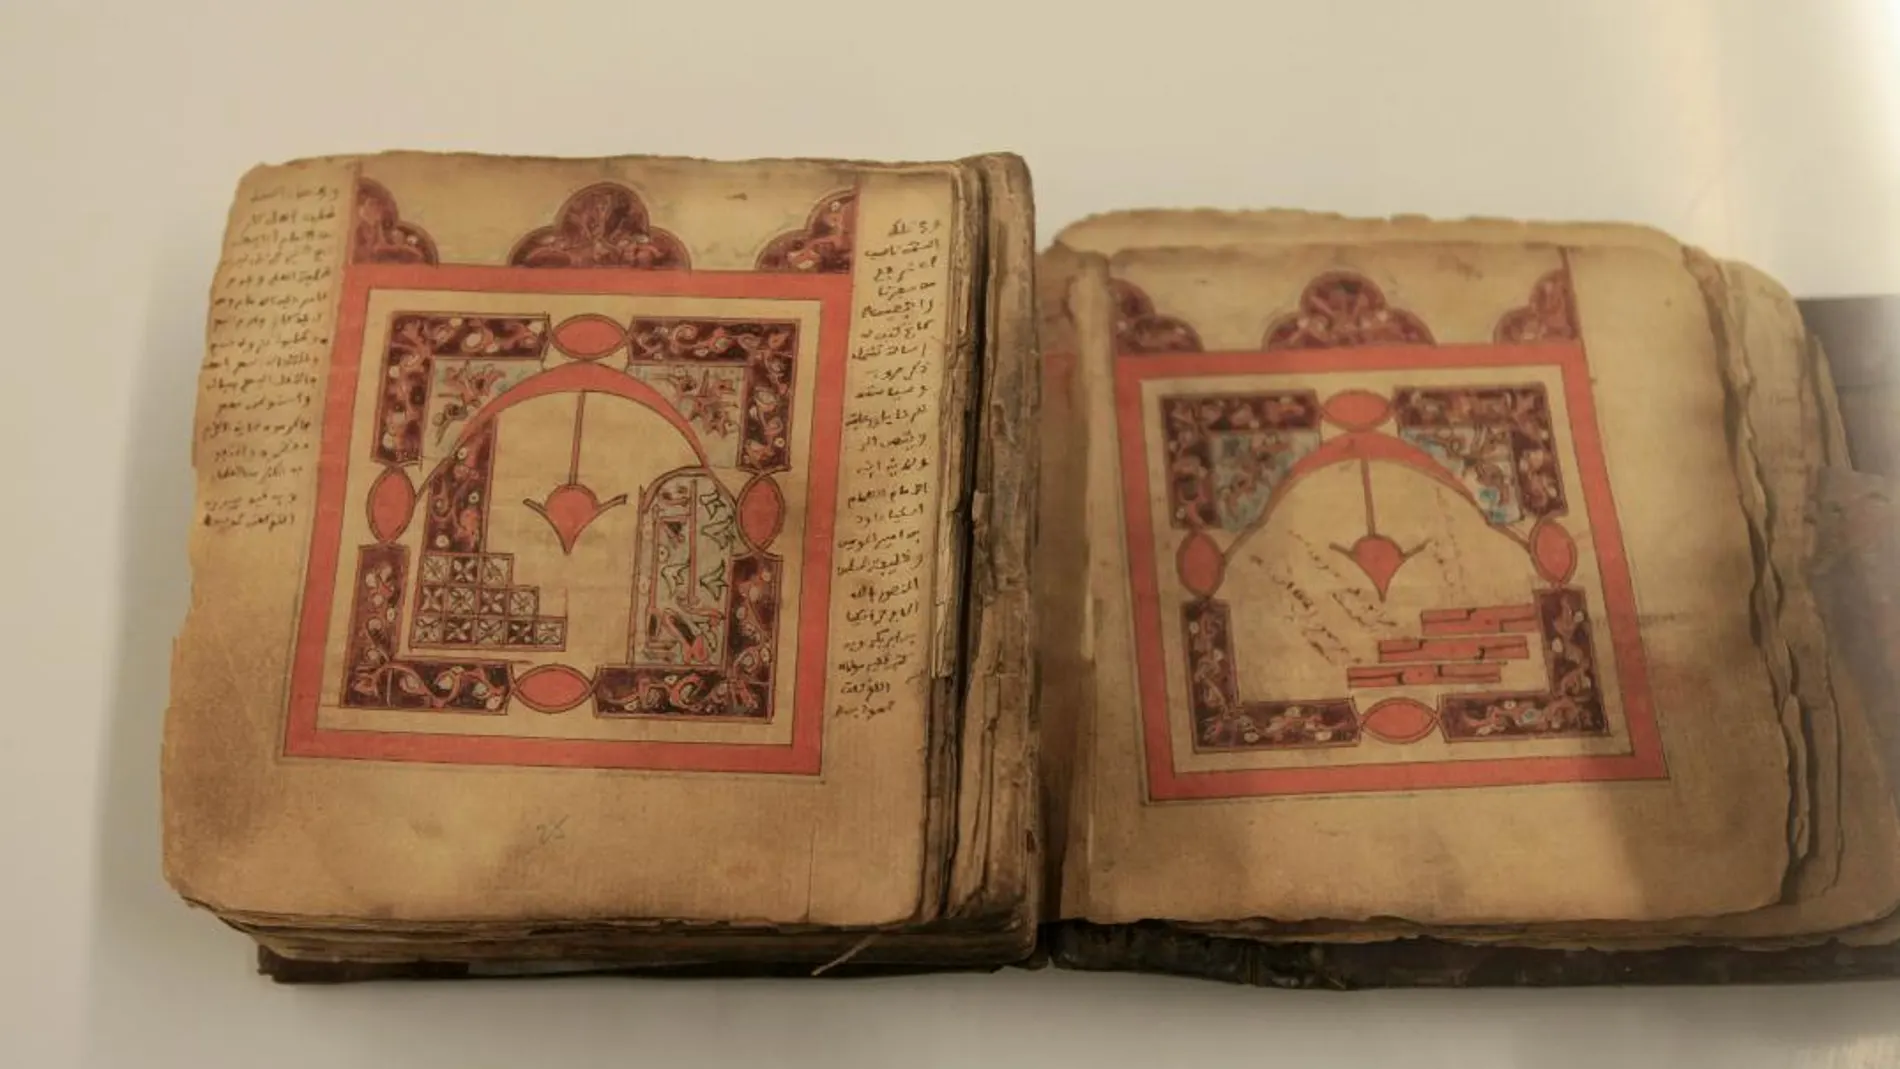 Los manuscritos se vieron amenazados por los islamistas radicales de Mali /Foto: Manuel Olmedo